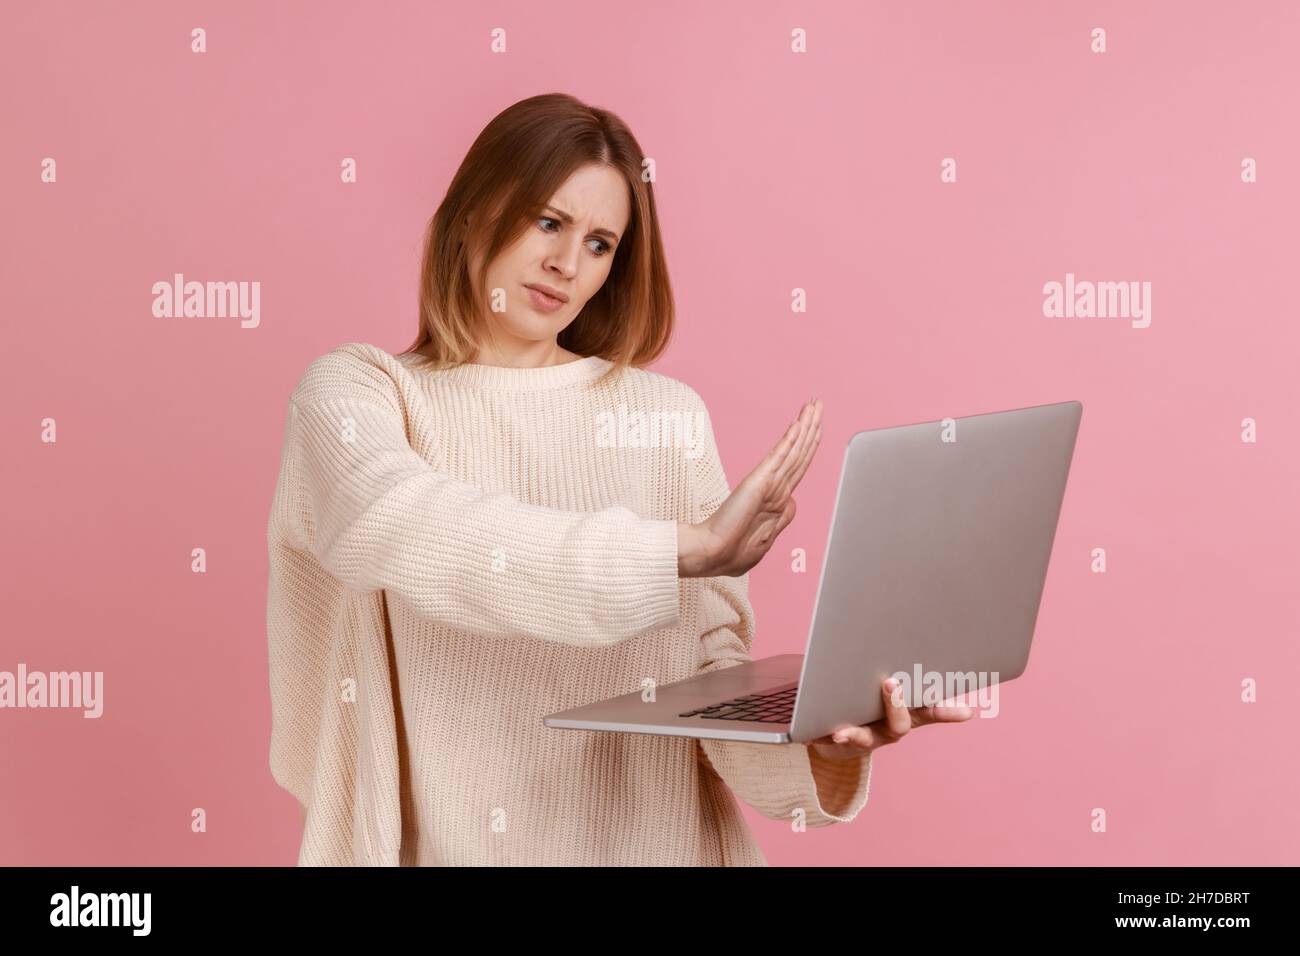 Femme montrant un geste d'arrêt sur l'écran de l'ordinateur portable, avertissement avec un panneau d'interdiction lors d'un appel vidéo, communication en ligne, port d'un chandail blanc.Studio d'intérieur isolé sur fond rose. Banque D'Images